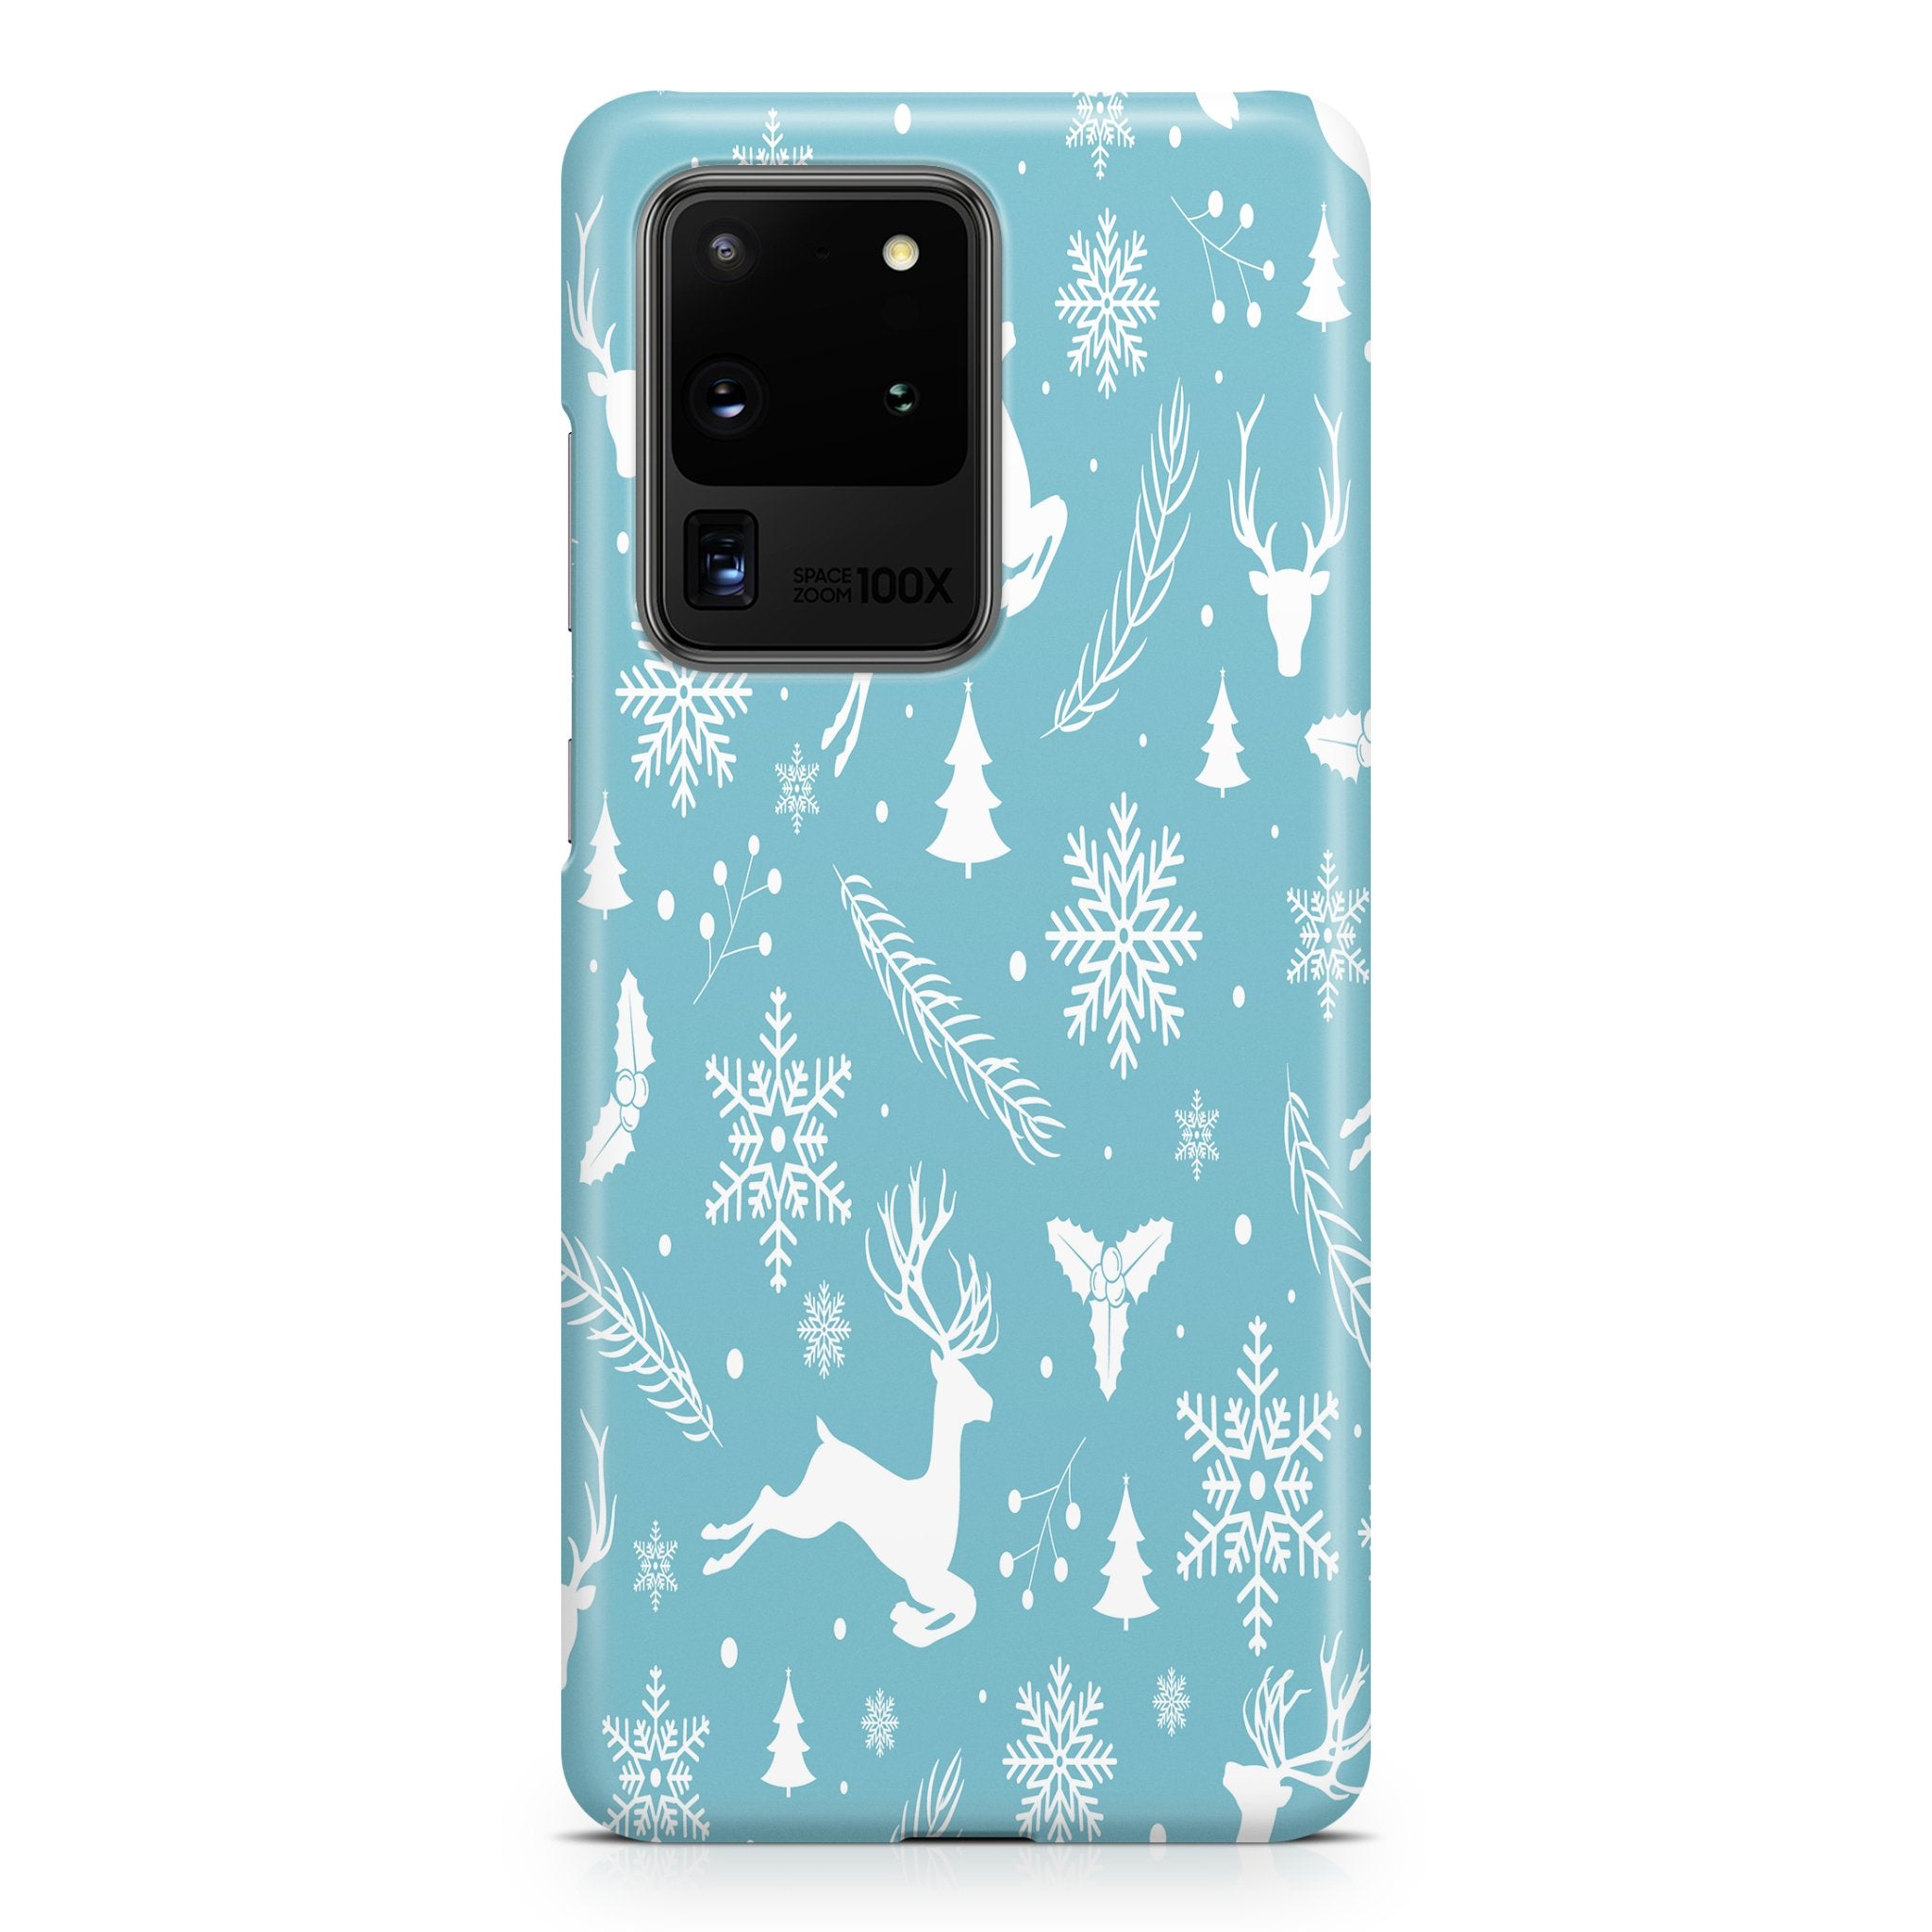 Winter Wonderland - Samsung phone case designs by CaseSwagger